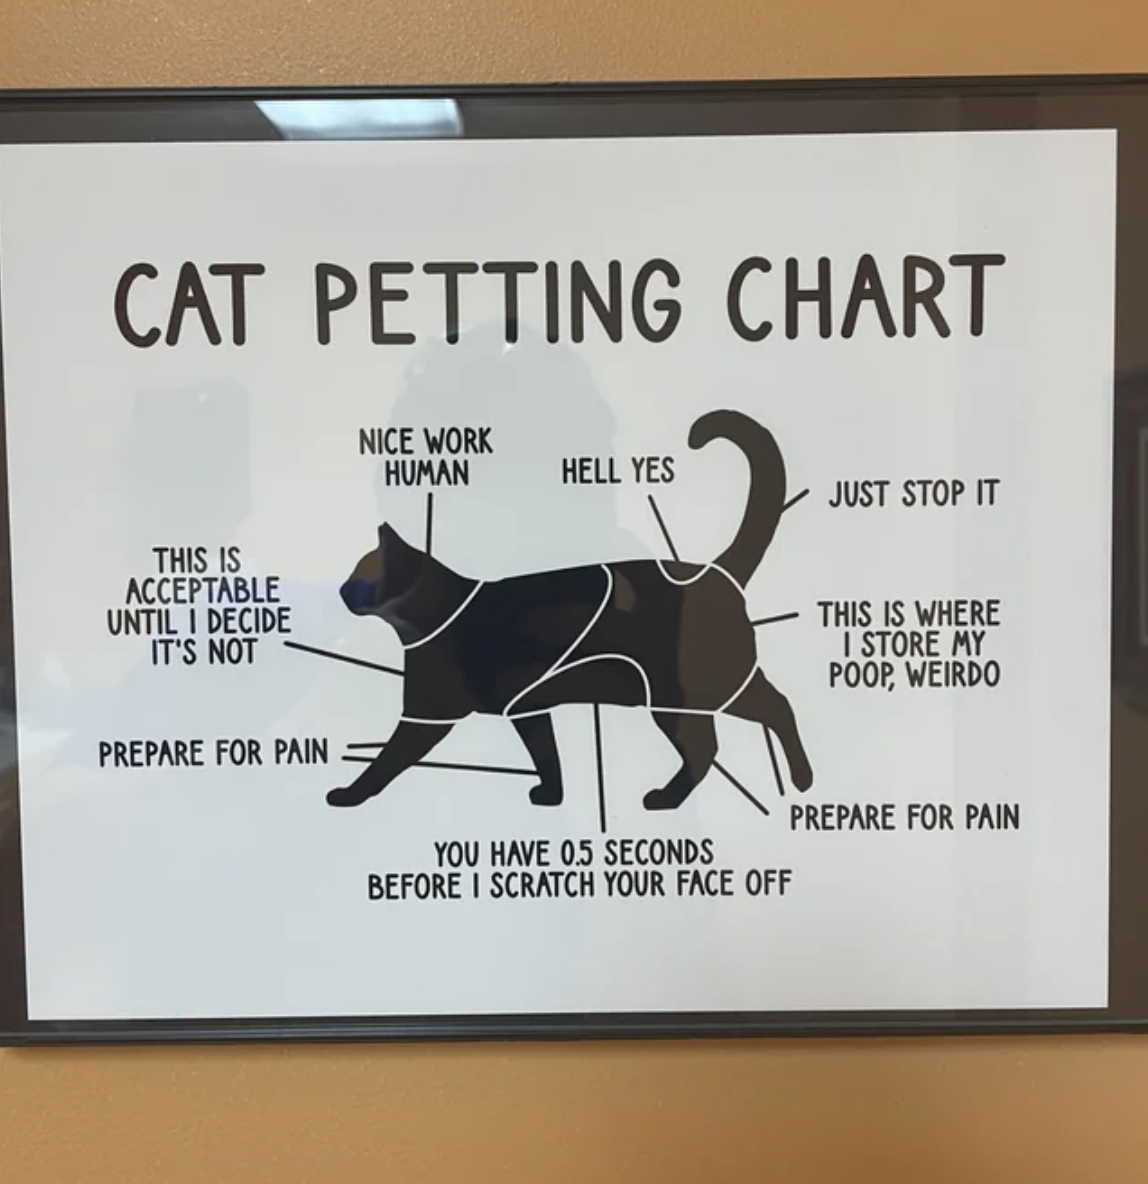 &quot;Cat petting chart&quot;